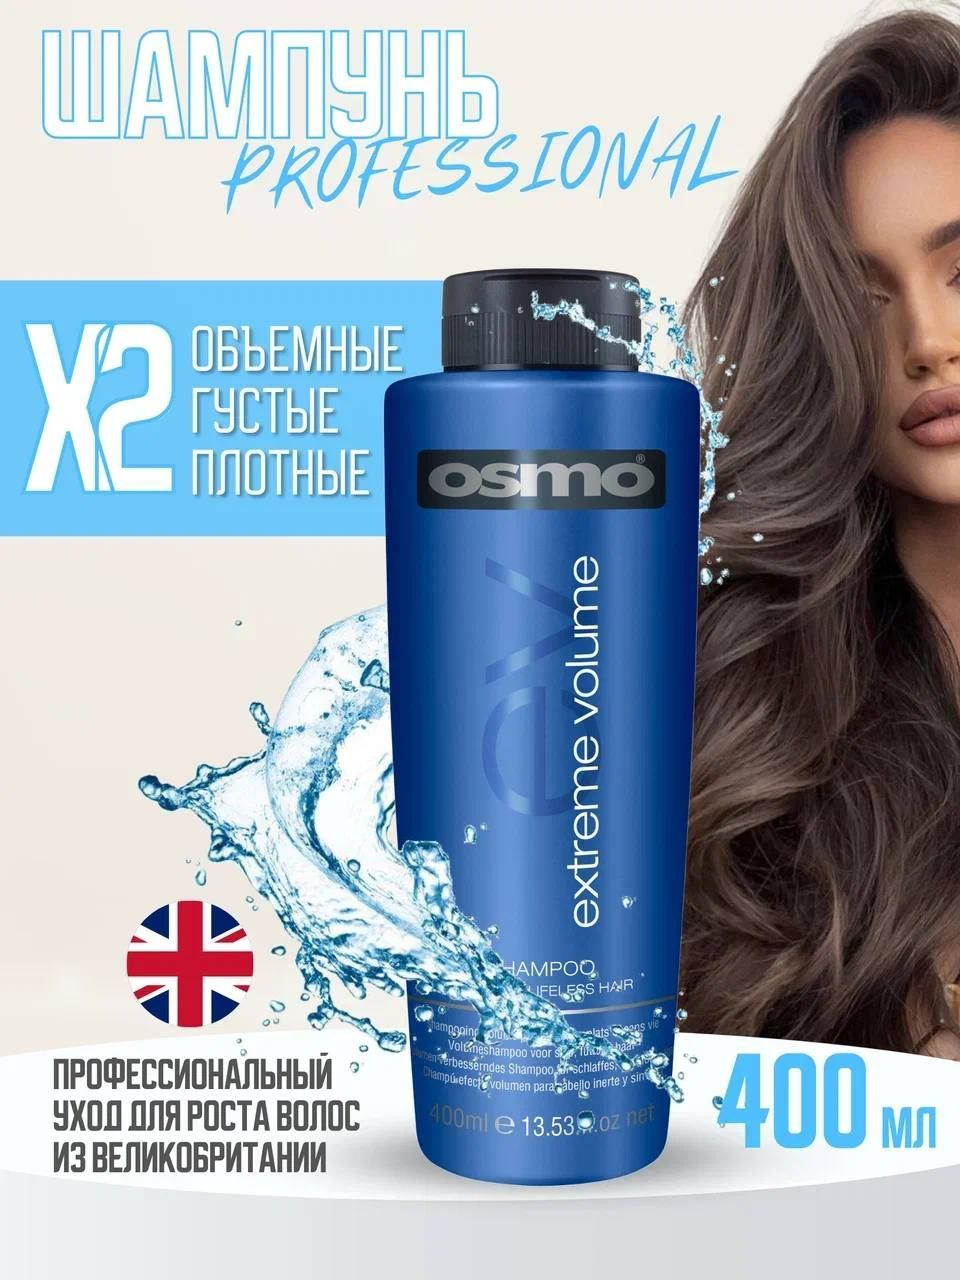 OSMO Extreme Volume Shampoo Шампунь женский, профессиональный, для волос, для ежедневного 400 мл — купить в интернет-магазине OZON с быстрой доставкой